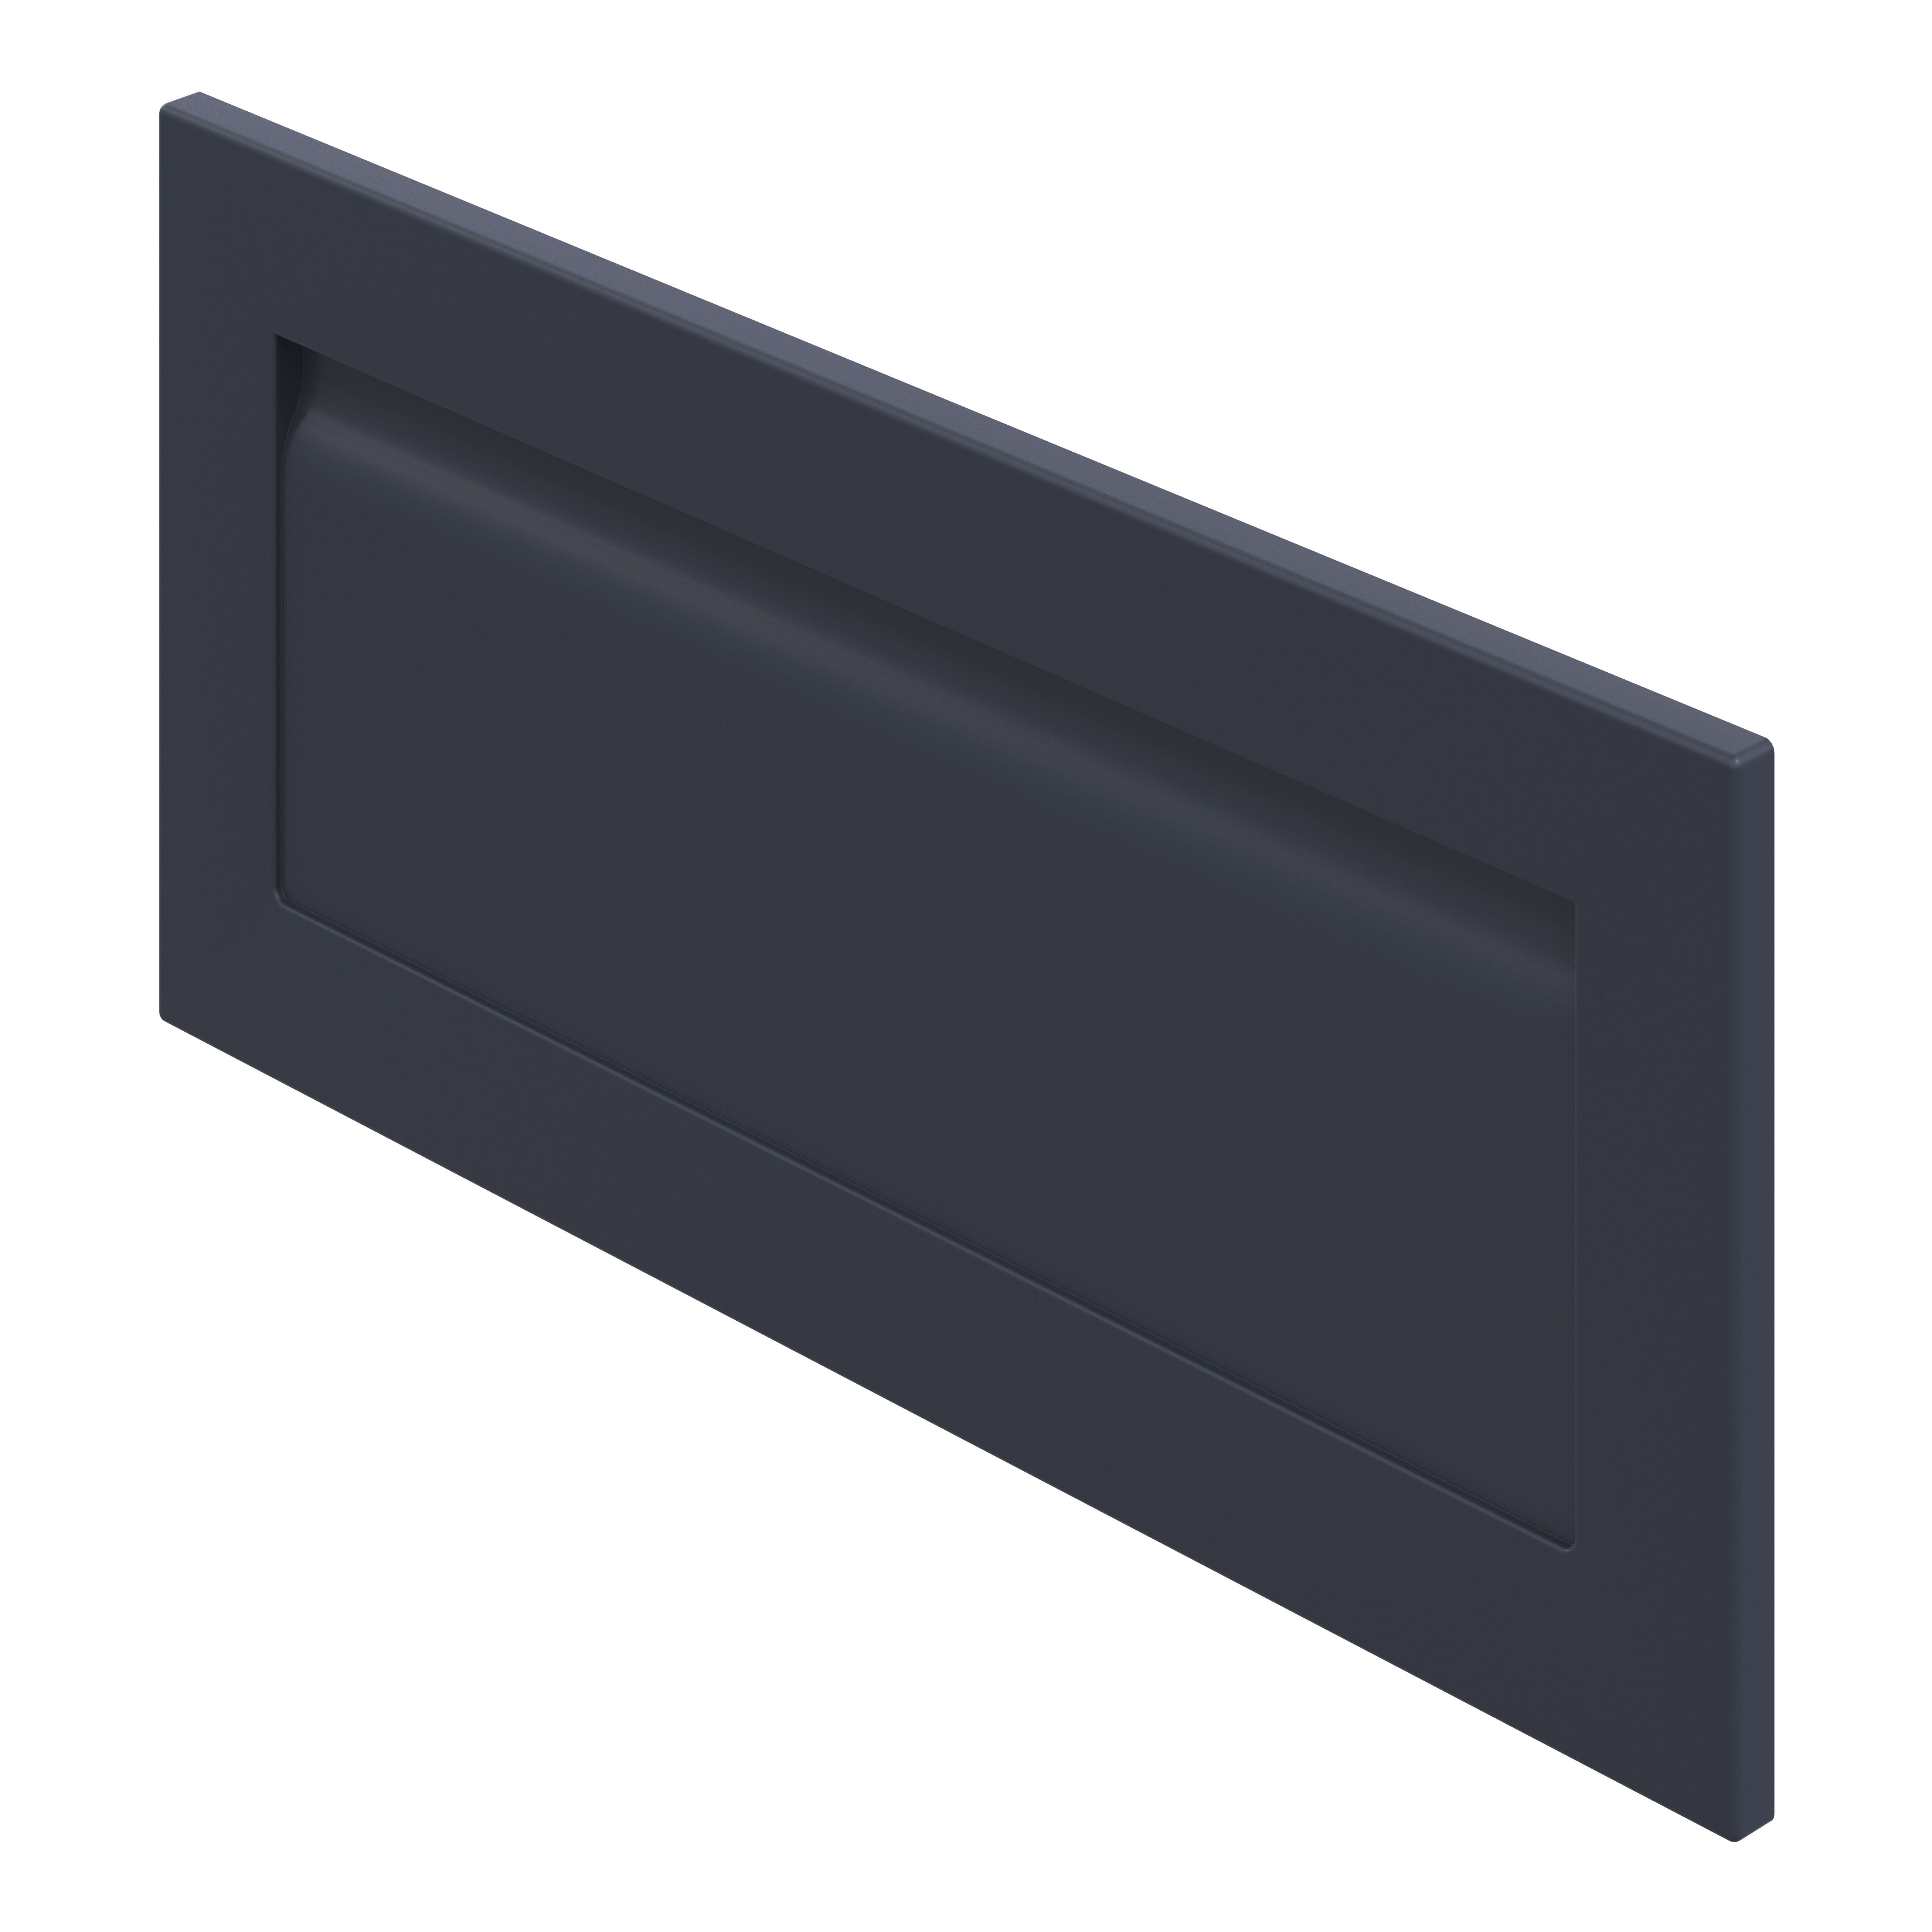 GoodHome Garcinia Matt navy blue shaker Drawer front, bridging door & bi fold door, (W)800mm (H)356mm (T)20mm